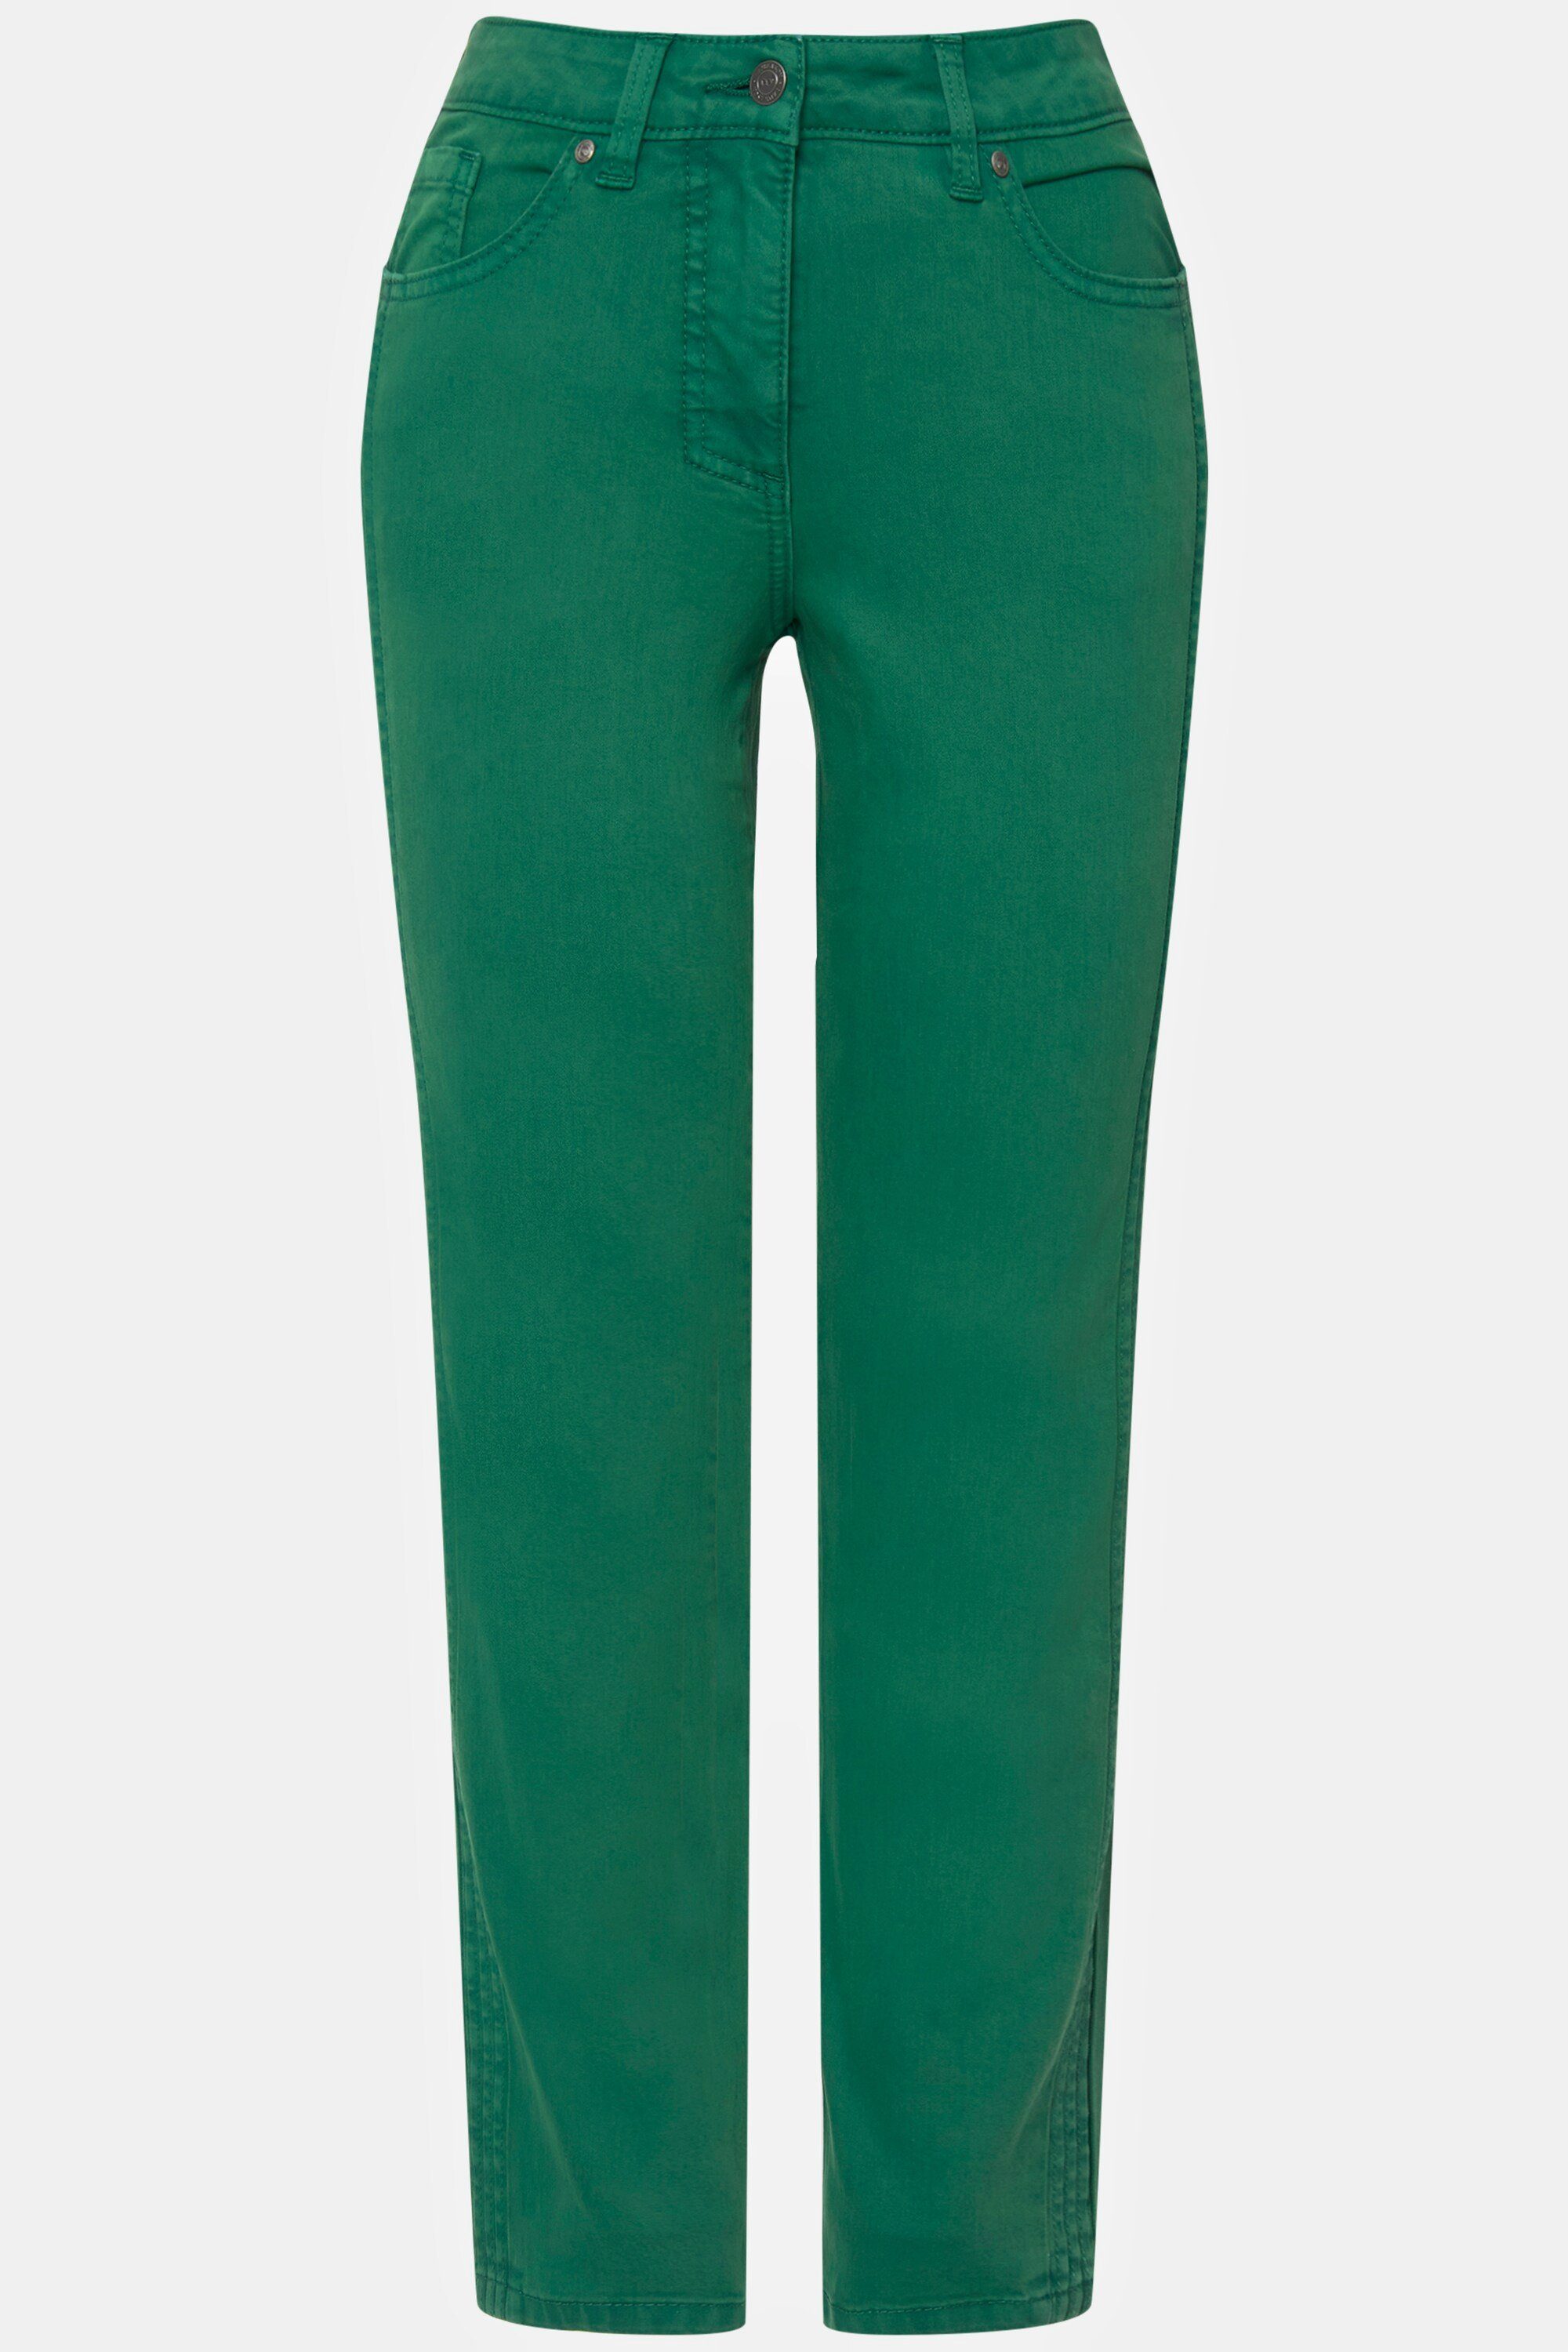 Laurasøn Passform grün Zierfalten Jeans seitliche Tina 5-Pocket-Jeans gerade